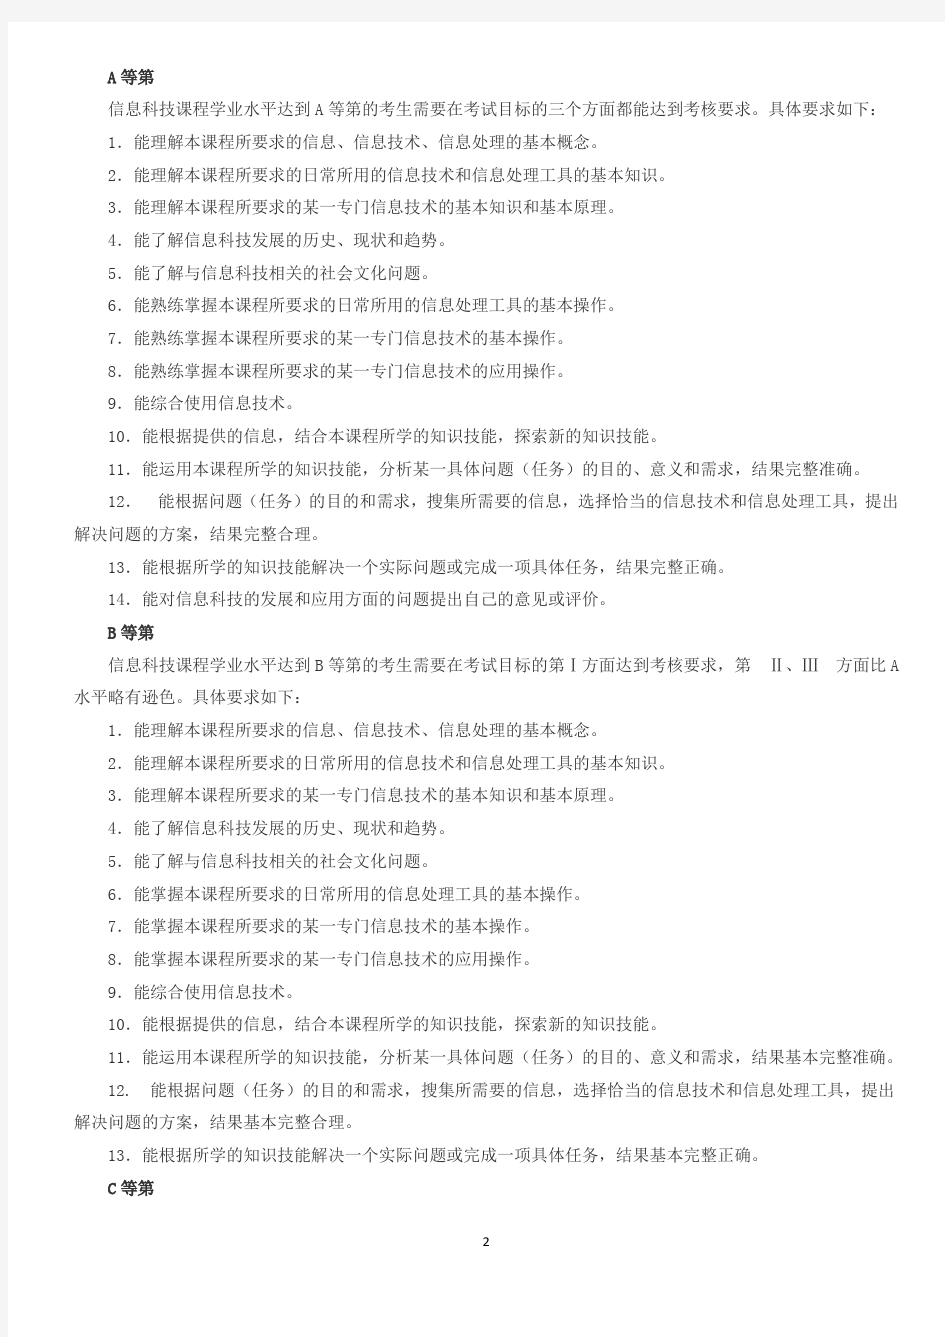 上海市高中学业水平考试信息科技学科考试大纲(正式发布版)